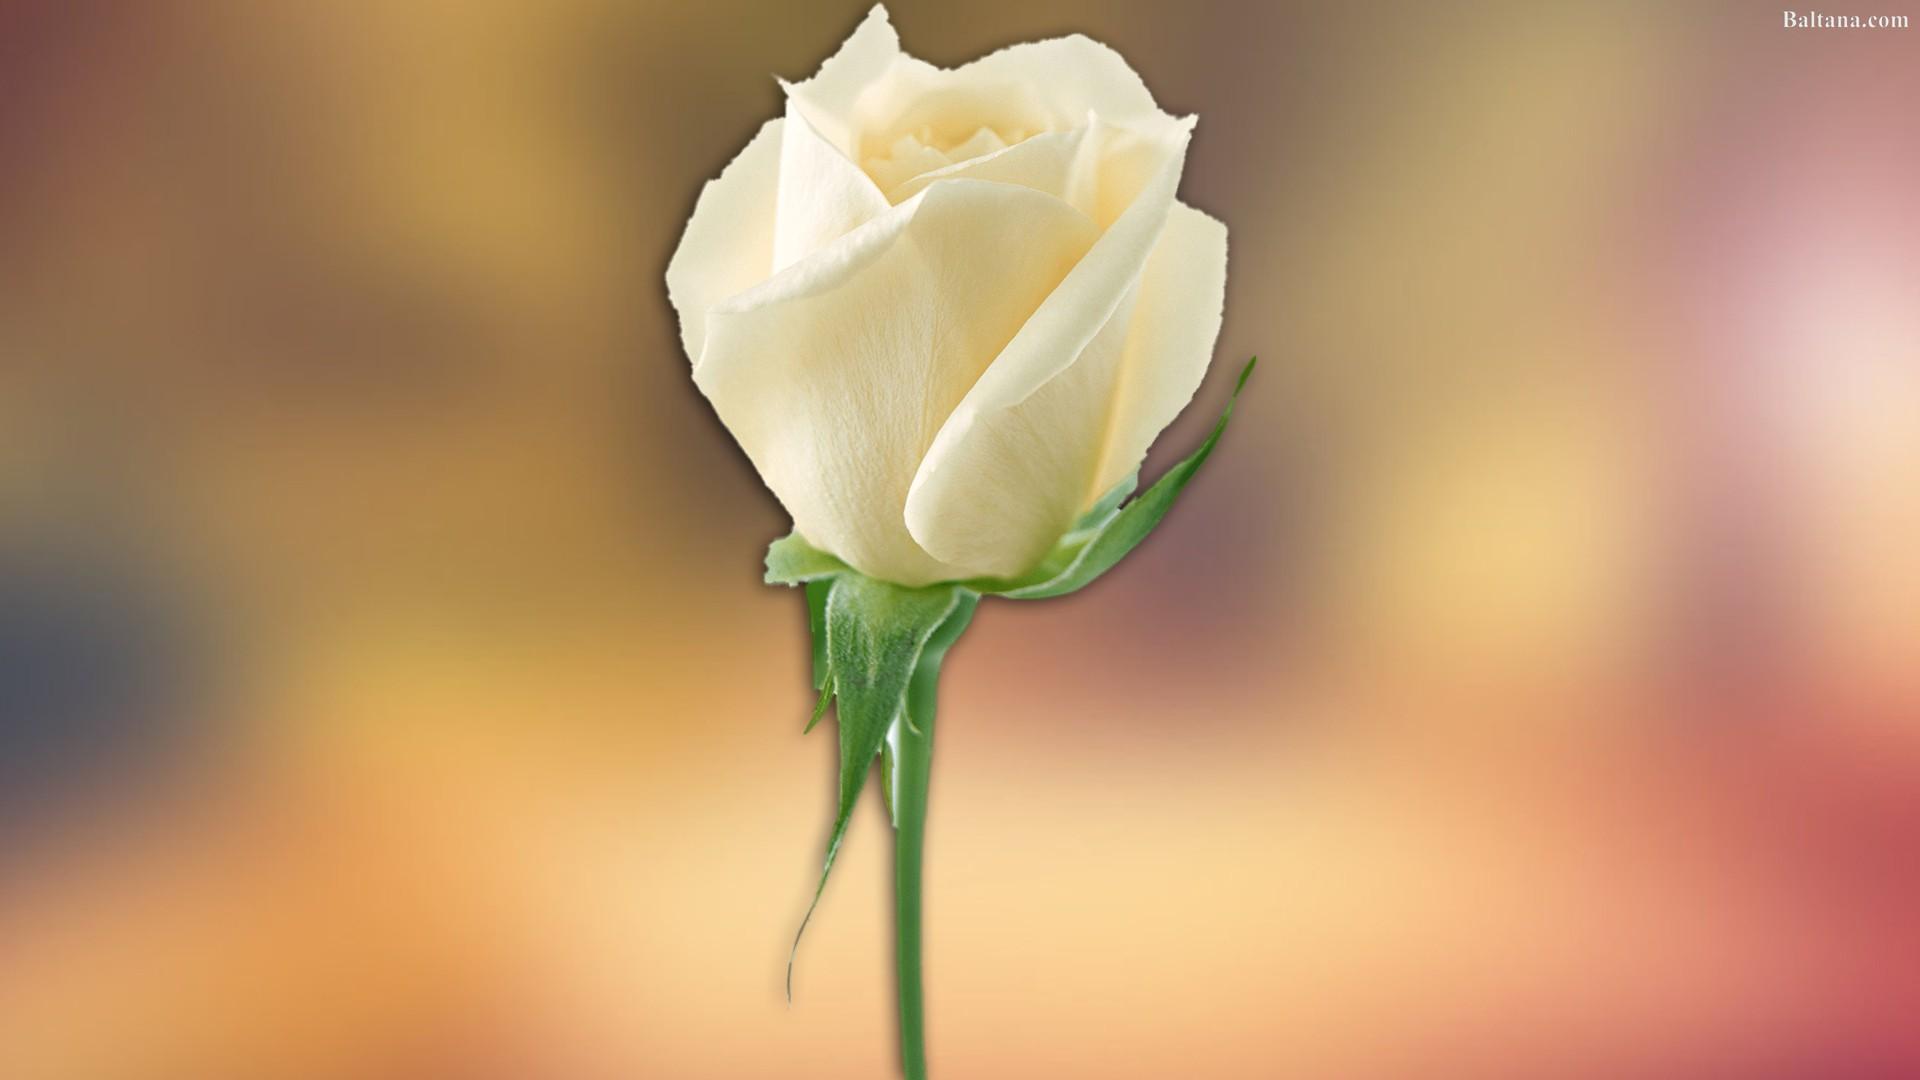 White Rose Desktop Wallpaper 32068